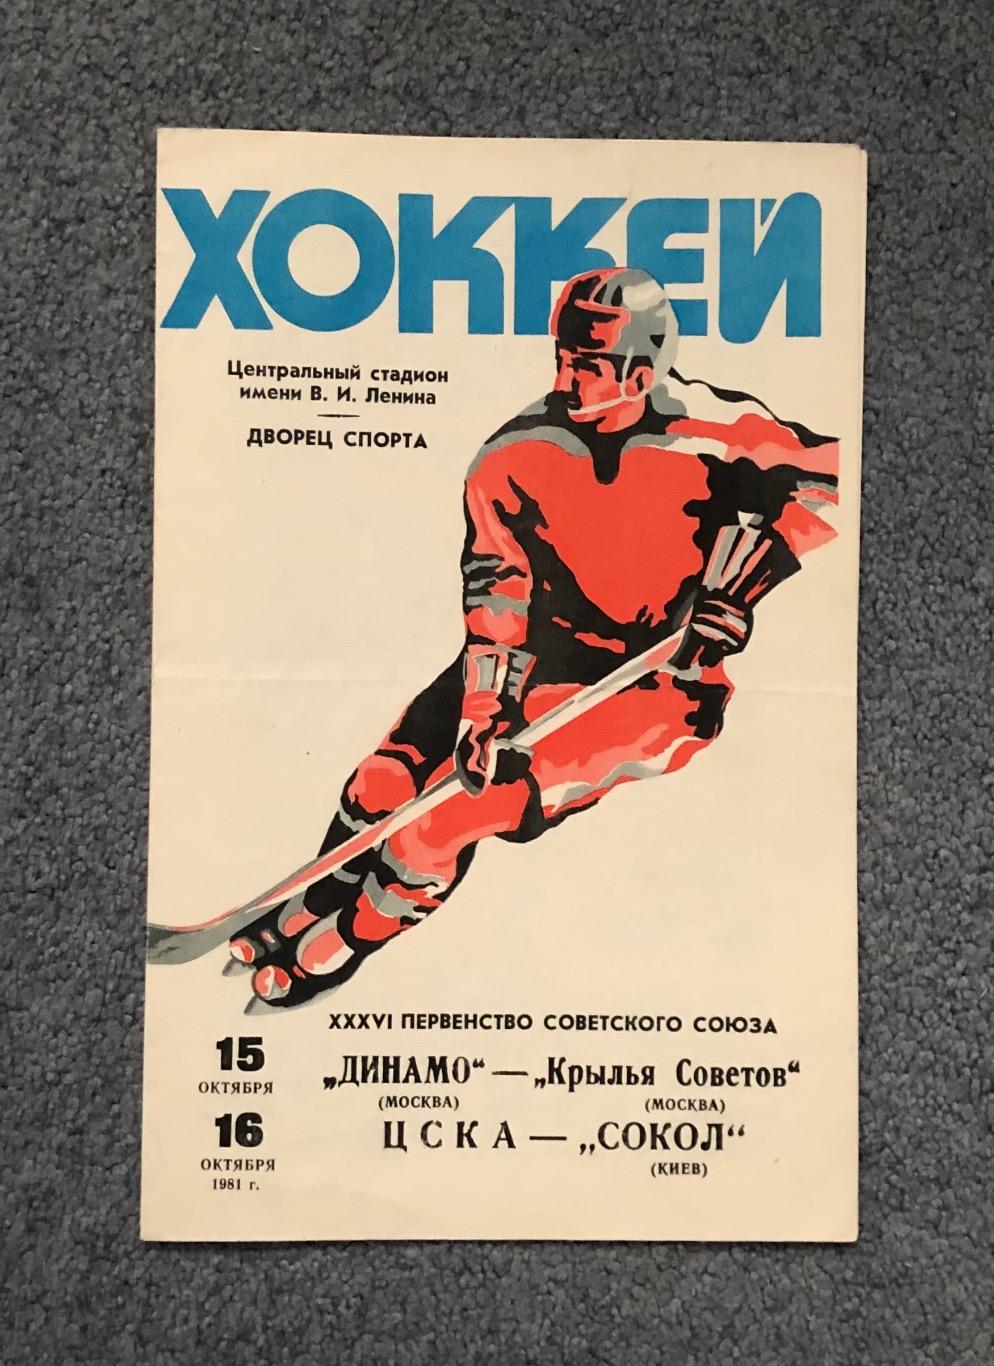 Динамо Москва - Крылья Советов, ЦСКА - Сокол Киев, 15 и 16.10.1981